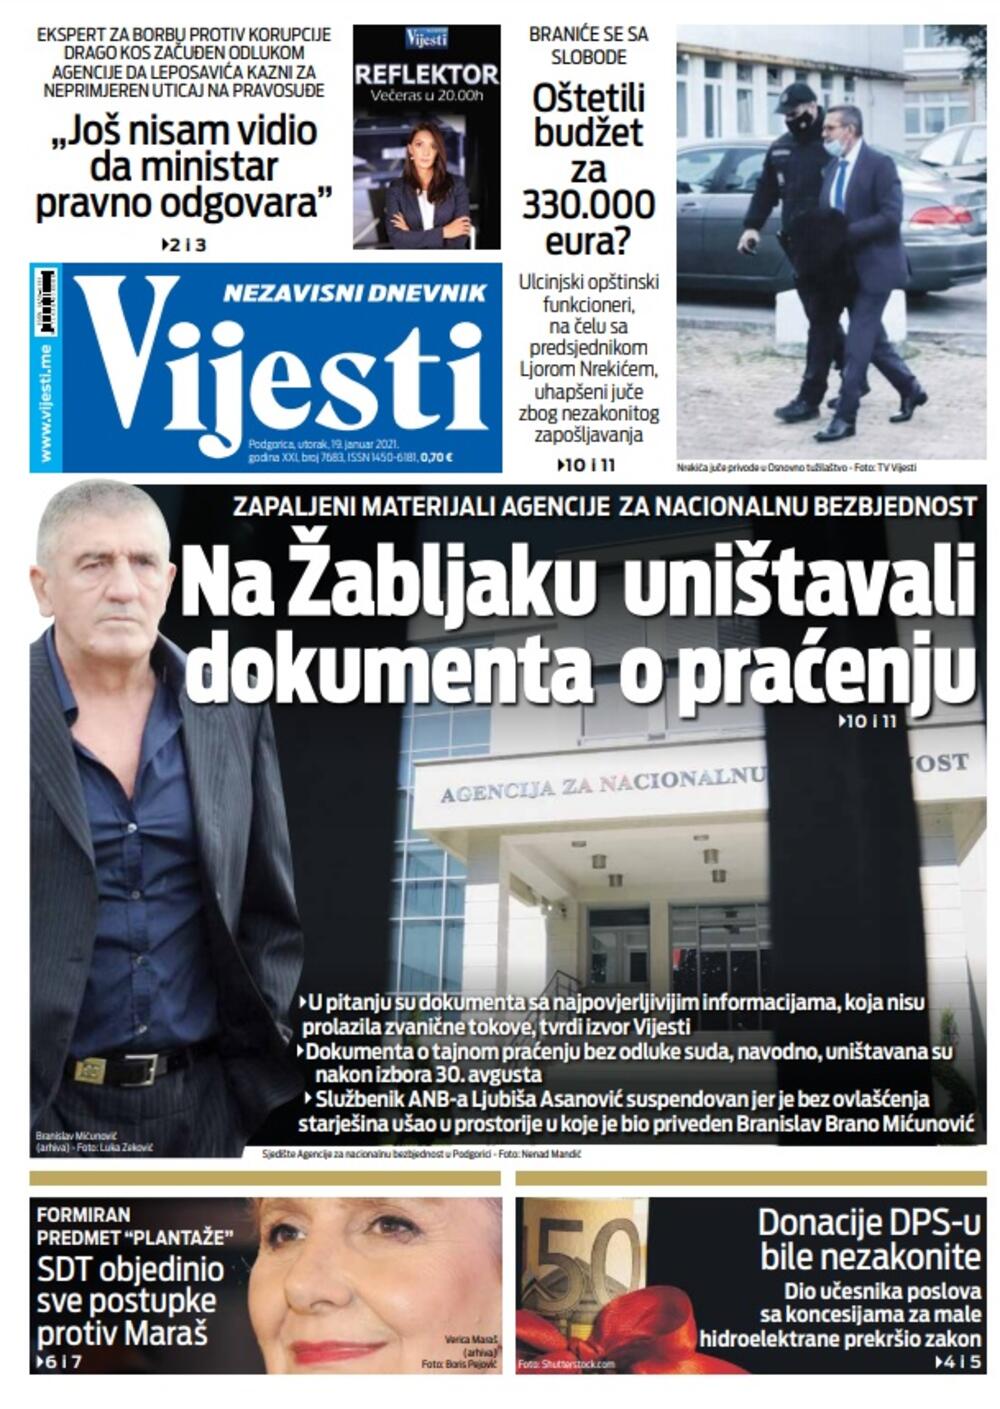 Naslovna strana "Vijesti" za utorak 19. januar 2021. godine, Foto: Vijesti